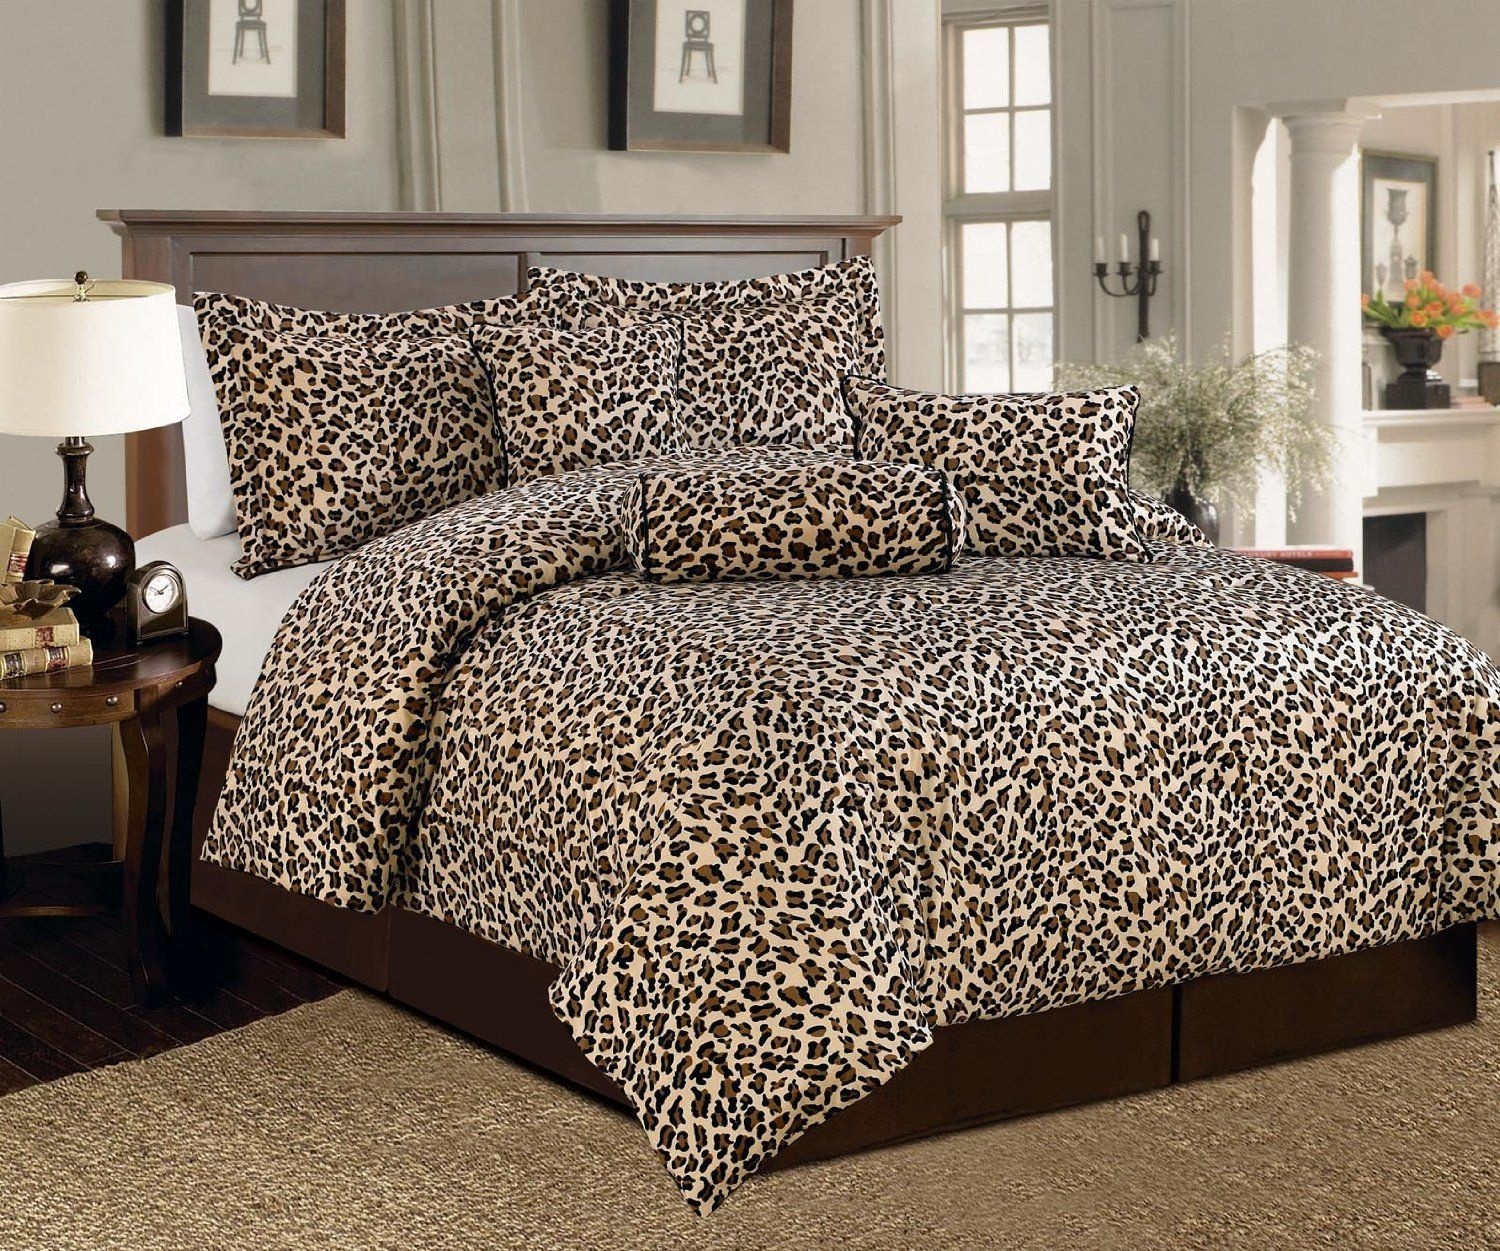 Tiger bed set